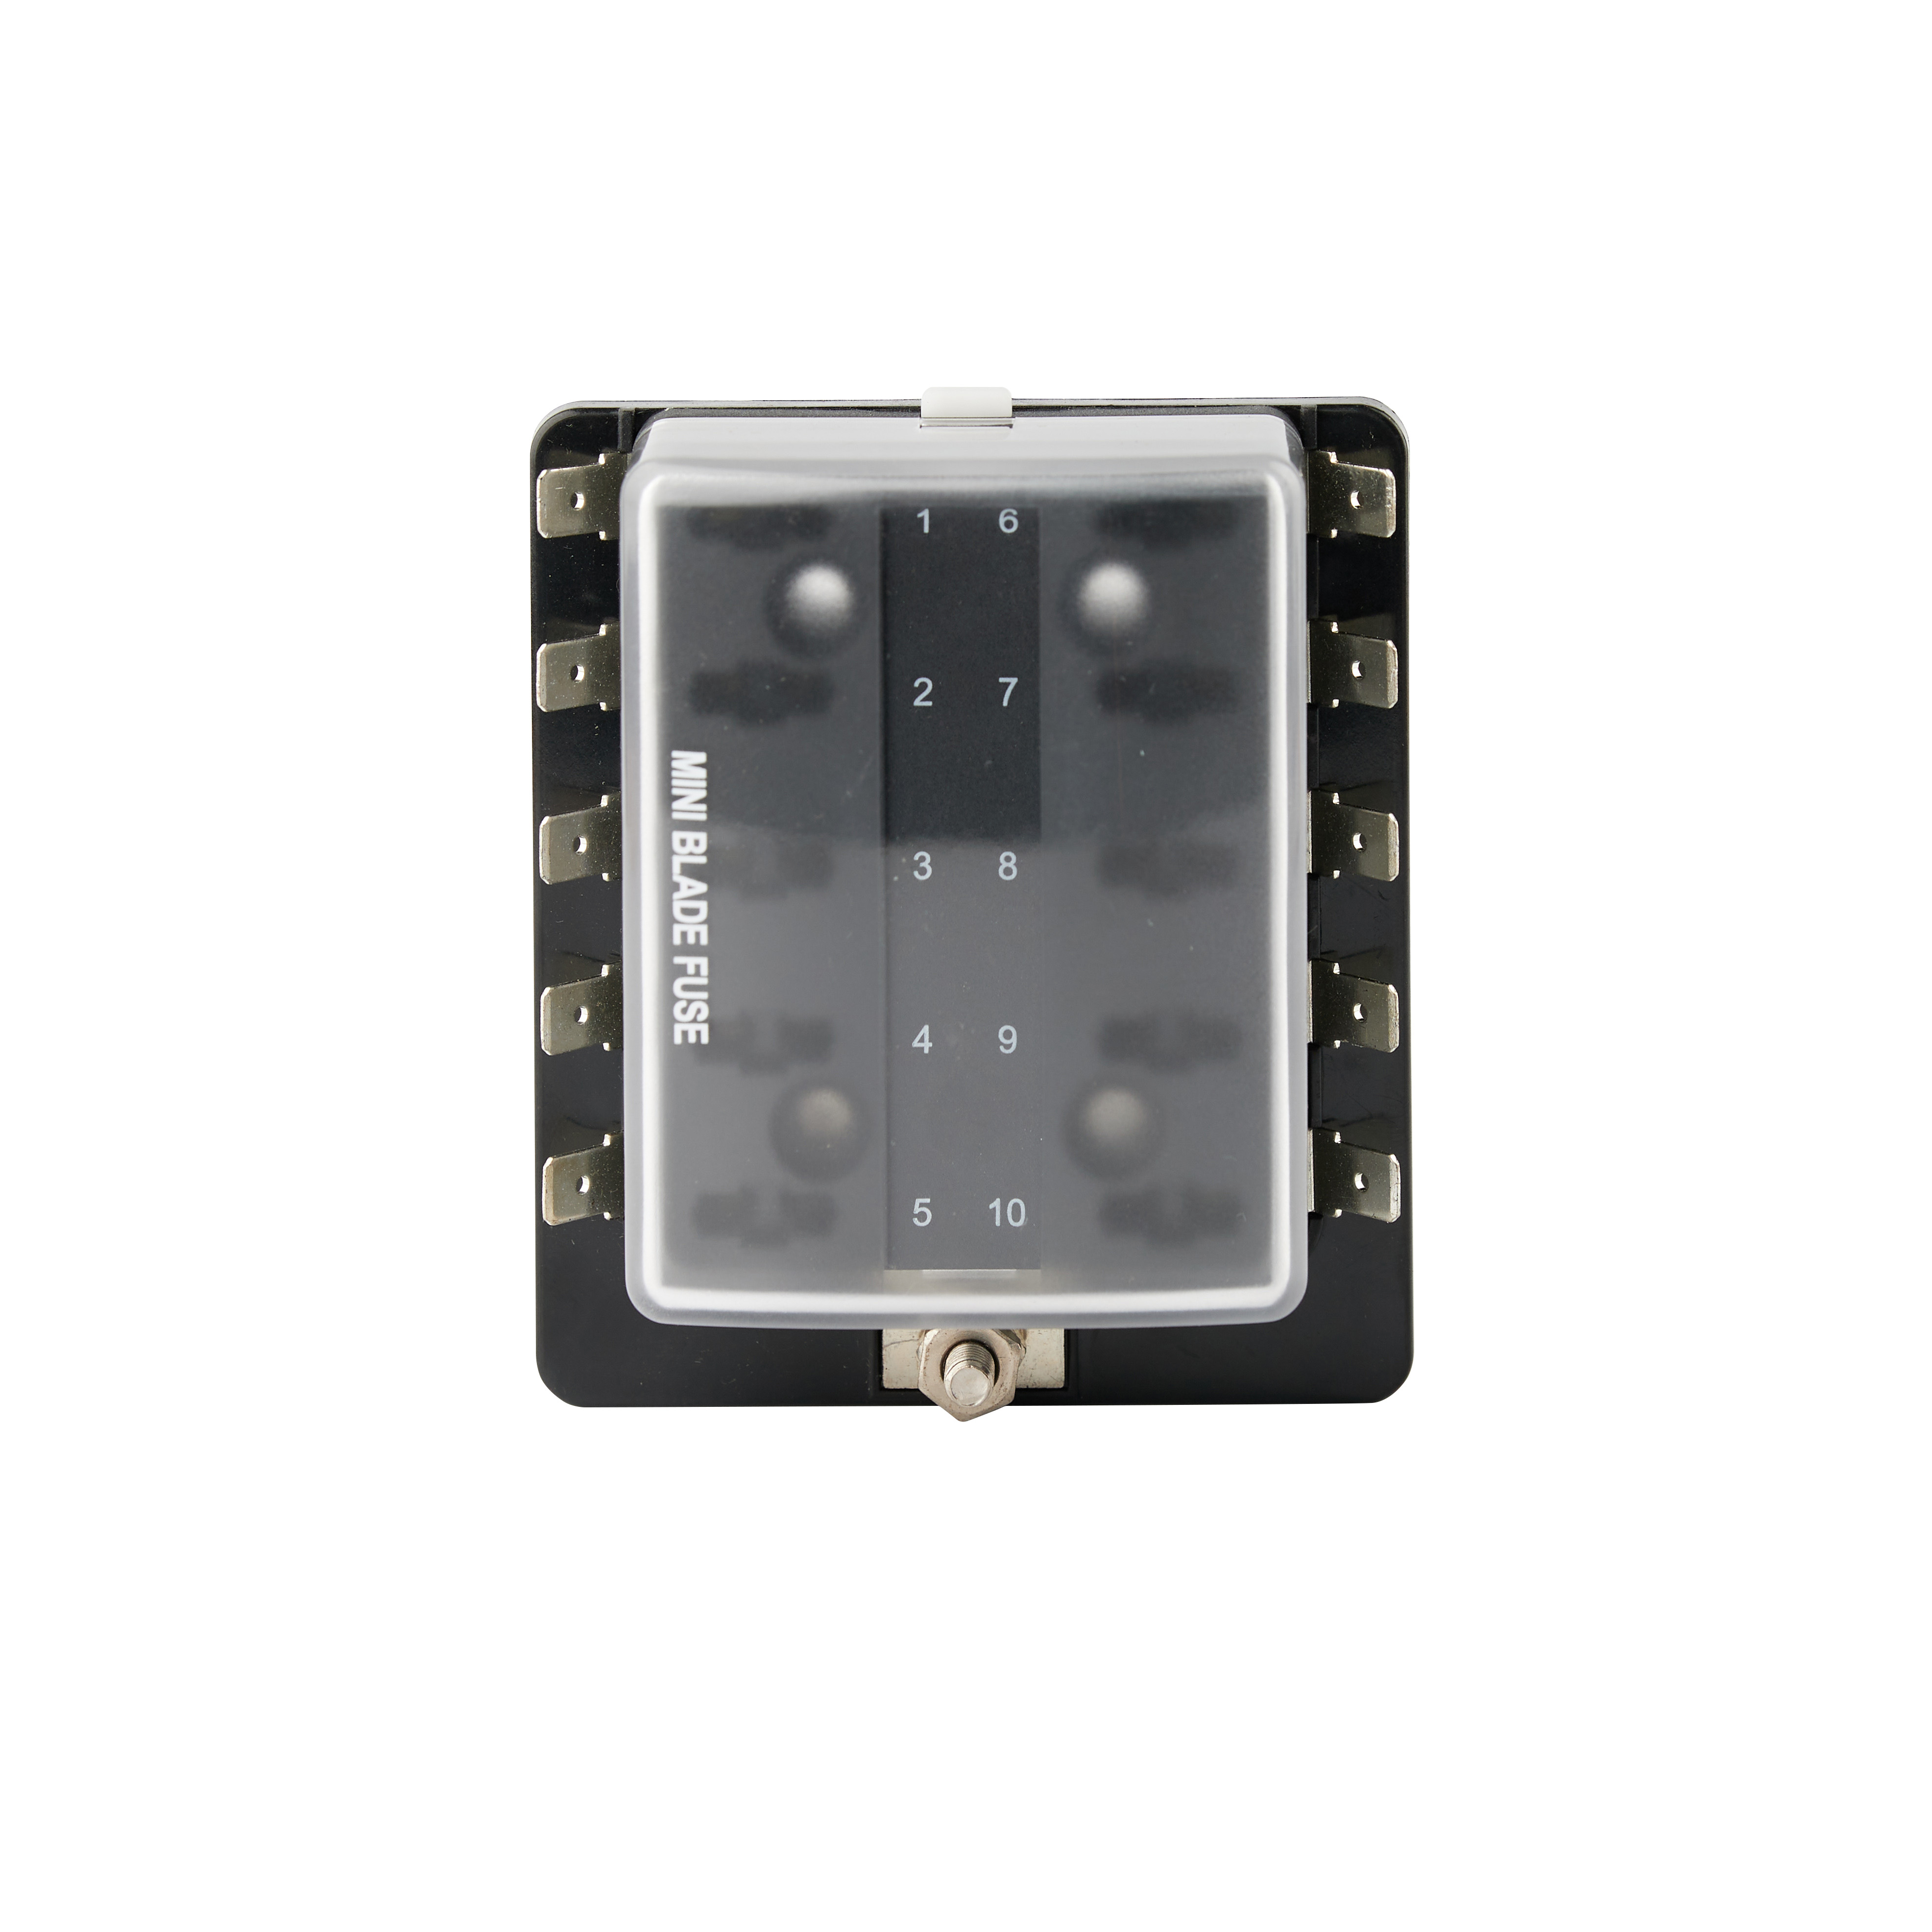 R3-79-01-1 方塊型保險絲盒 含LED 警示燈、迷你刀片保險絲